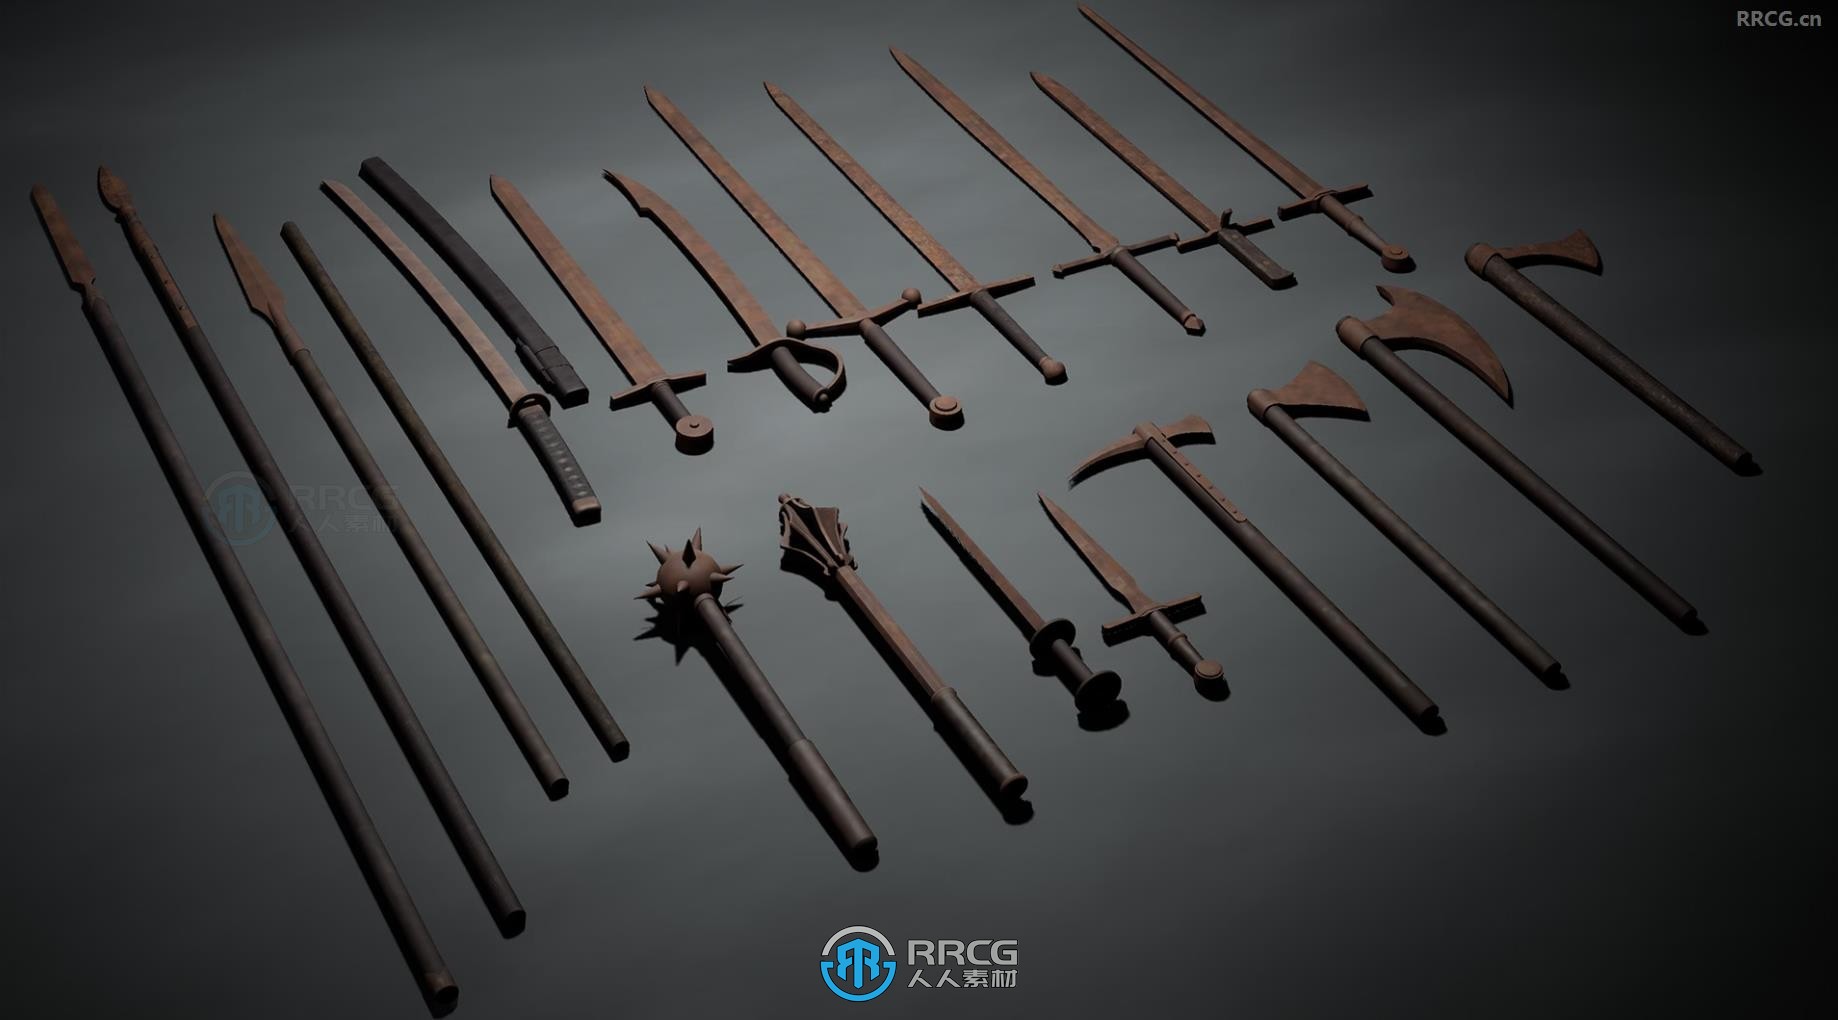 46组骷髅骨头与20组武器装备道具模型UE游戏素材